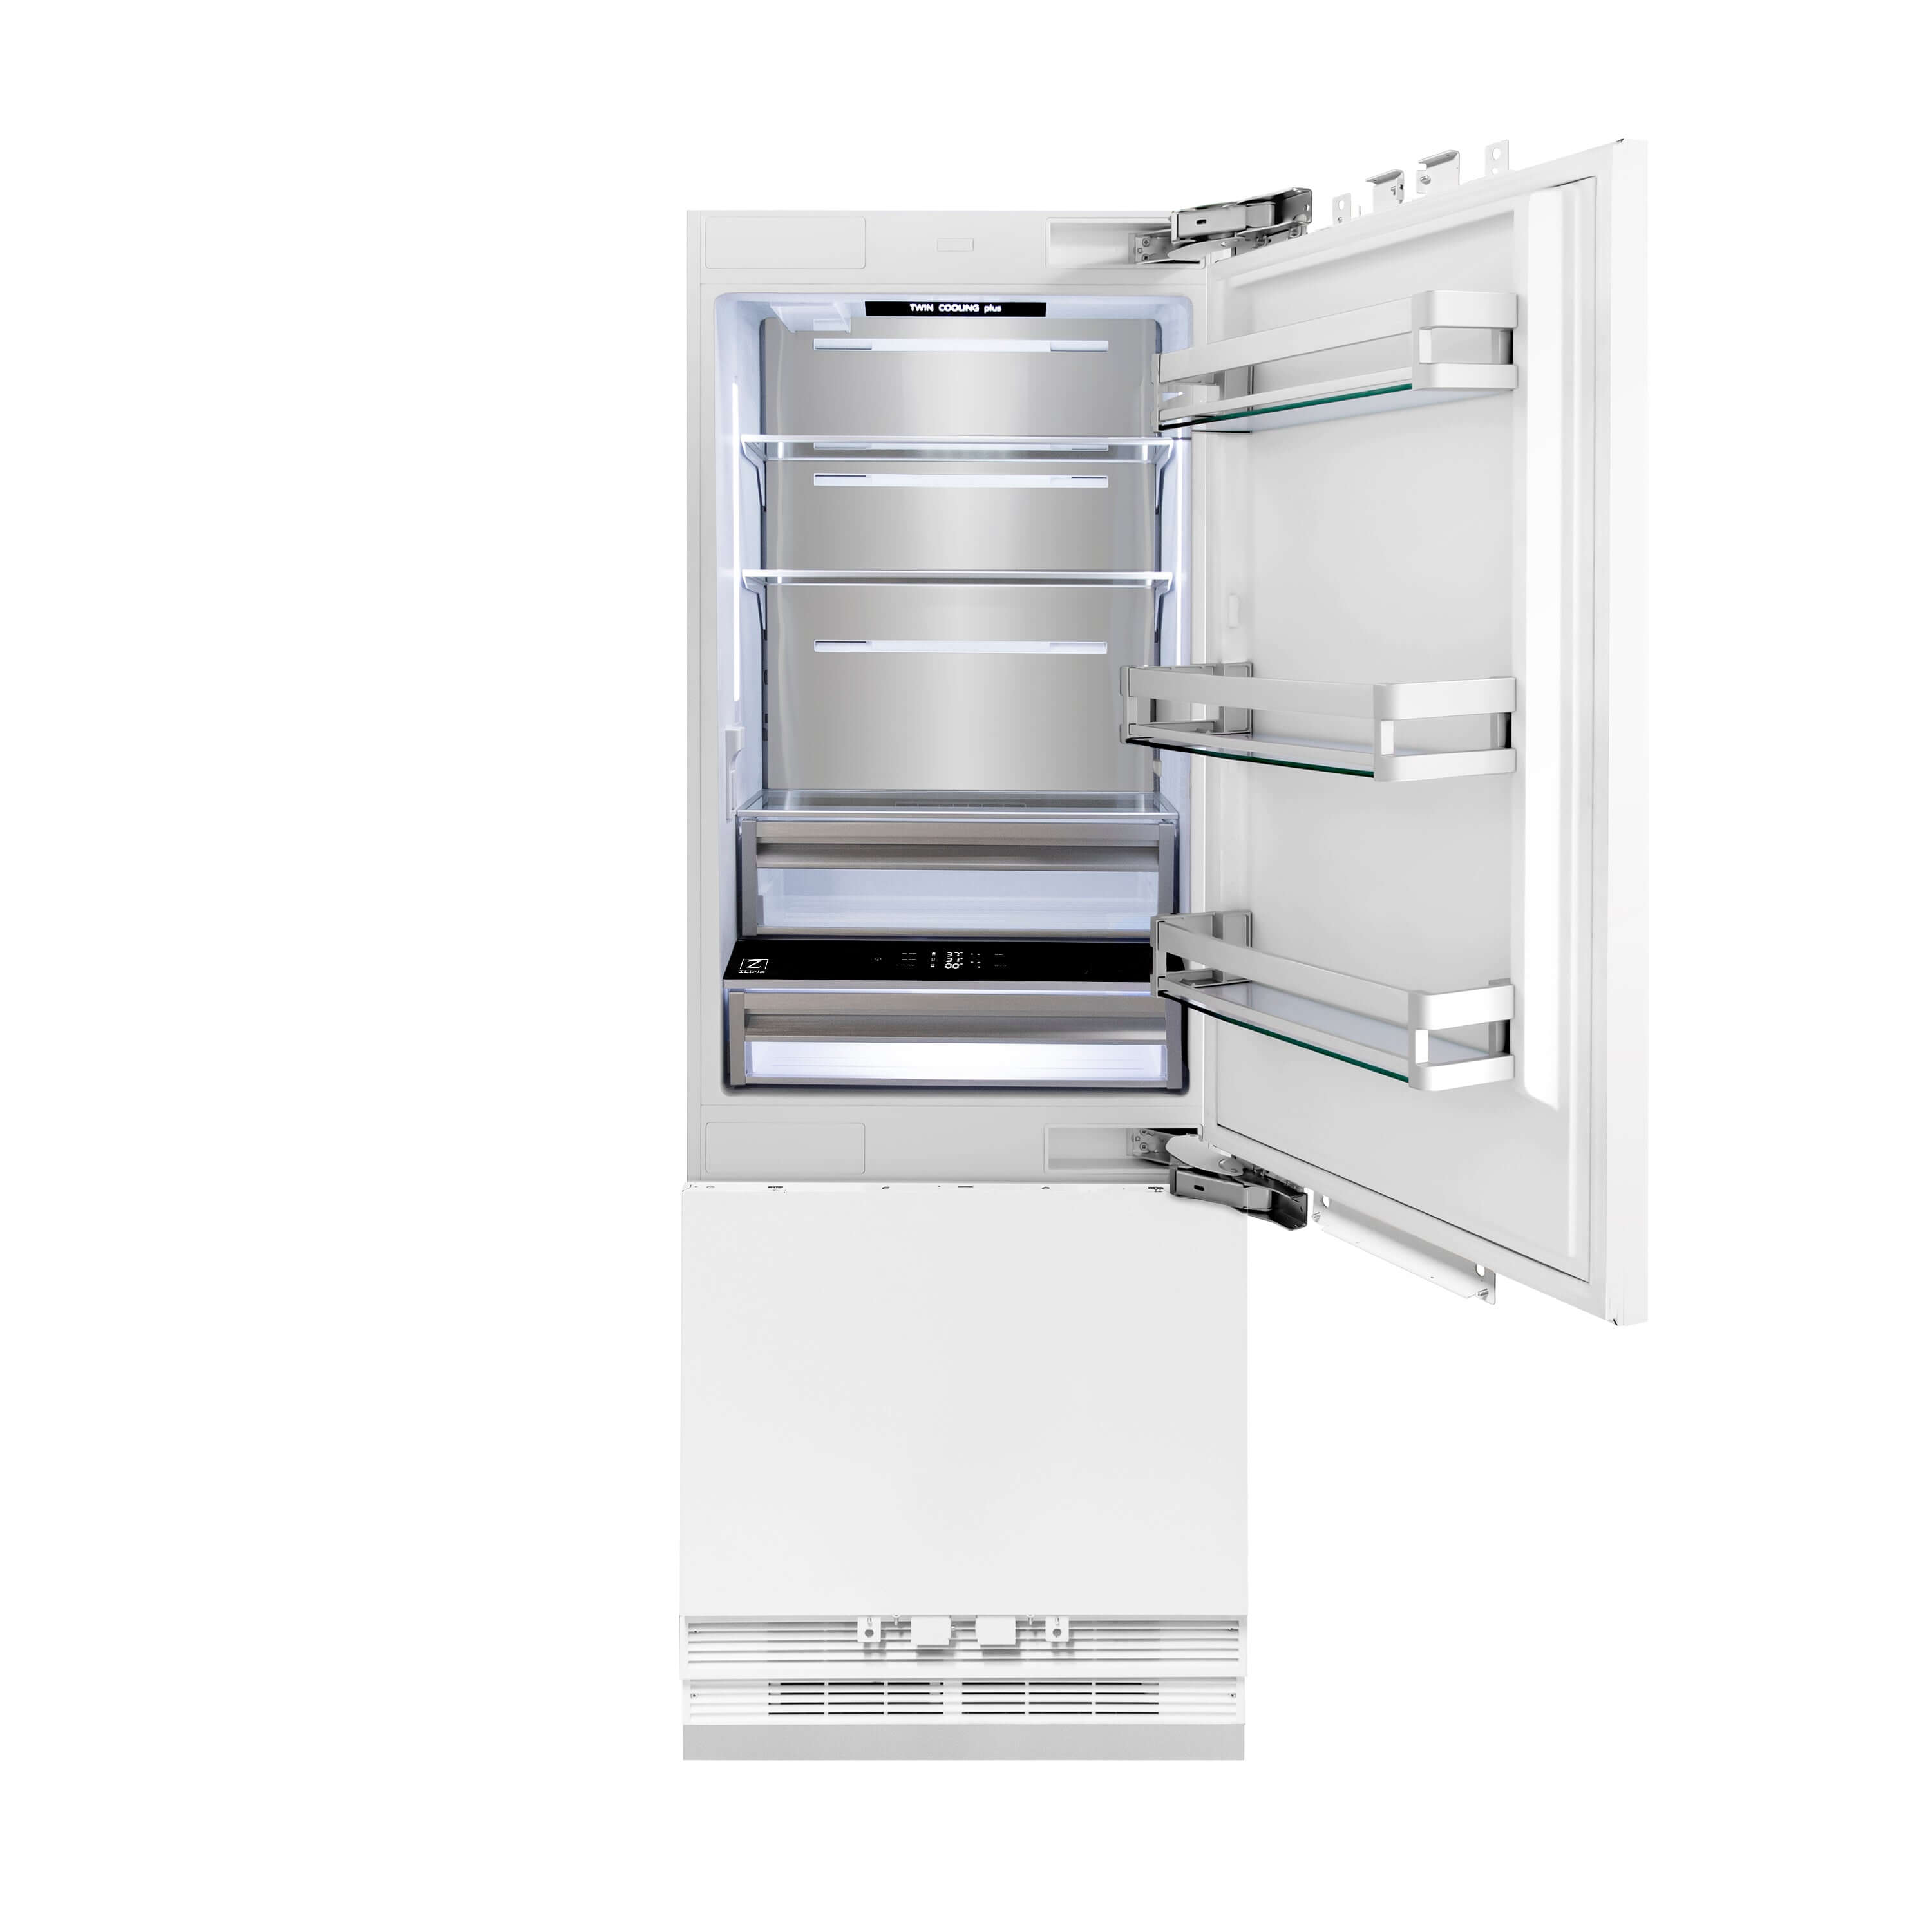 ZLINE Built-in Refrigerator (RBIV) front with doors open.